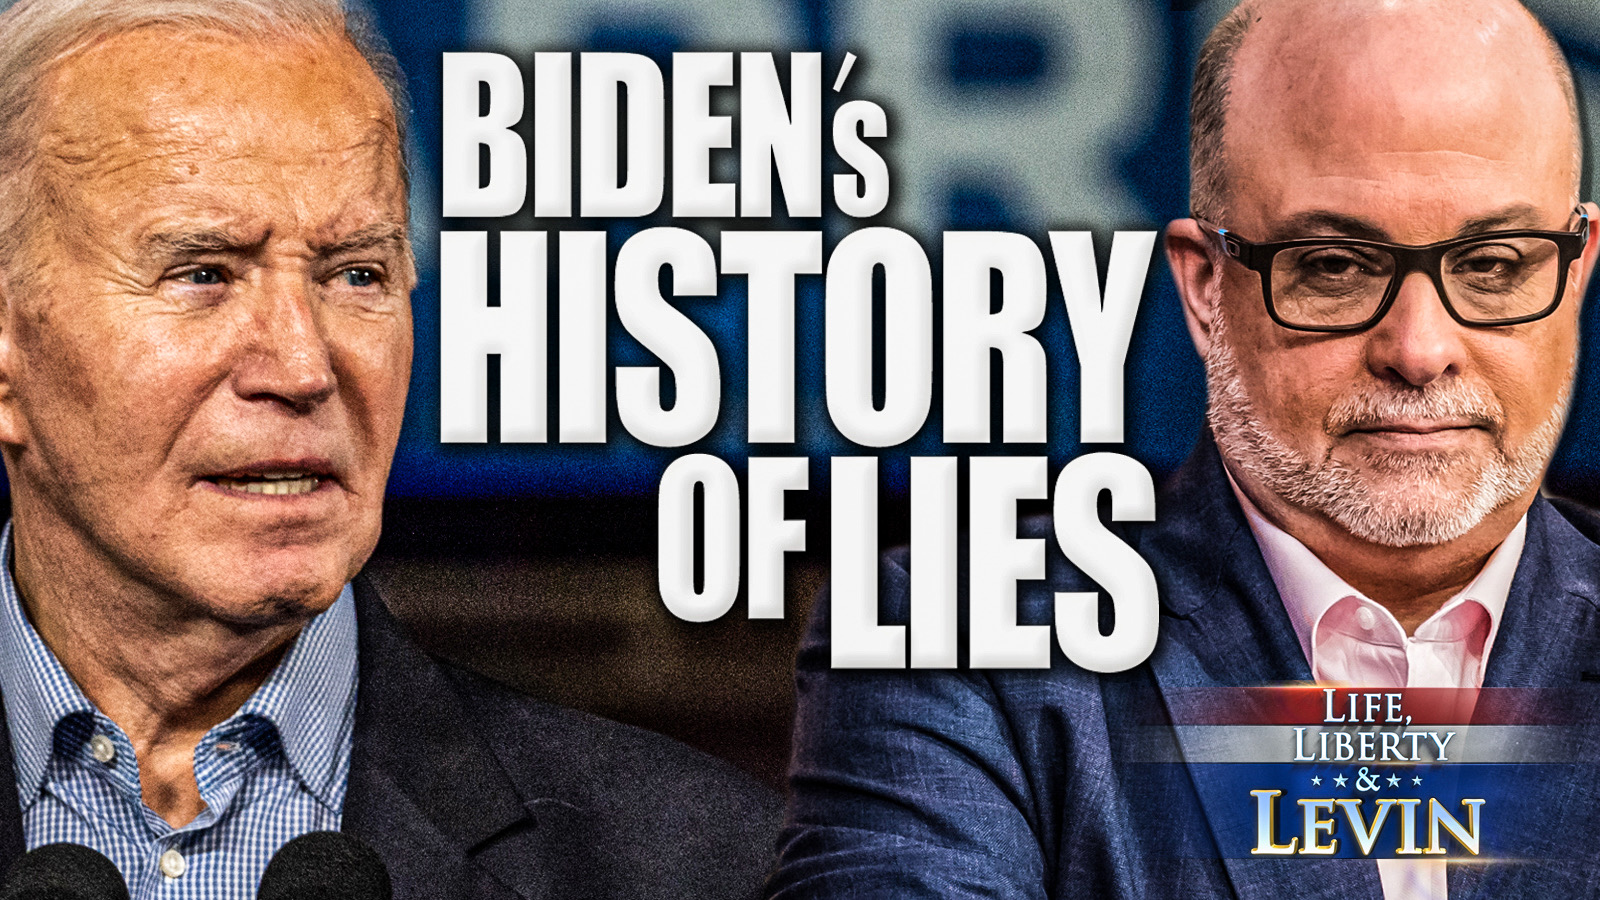 Exposing Biden’s Historical Lies